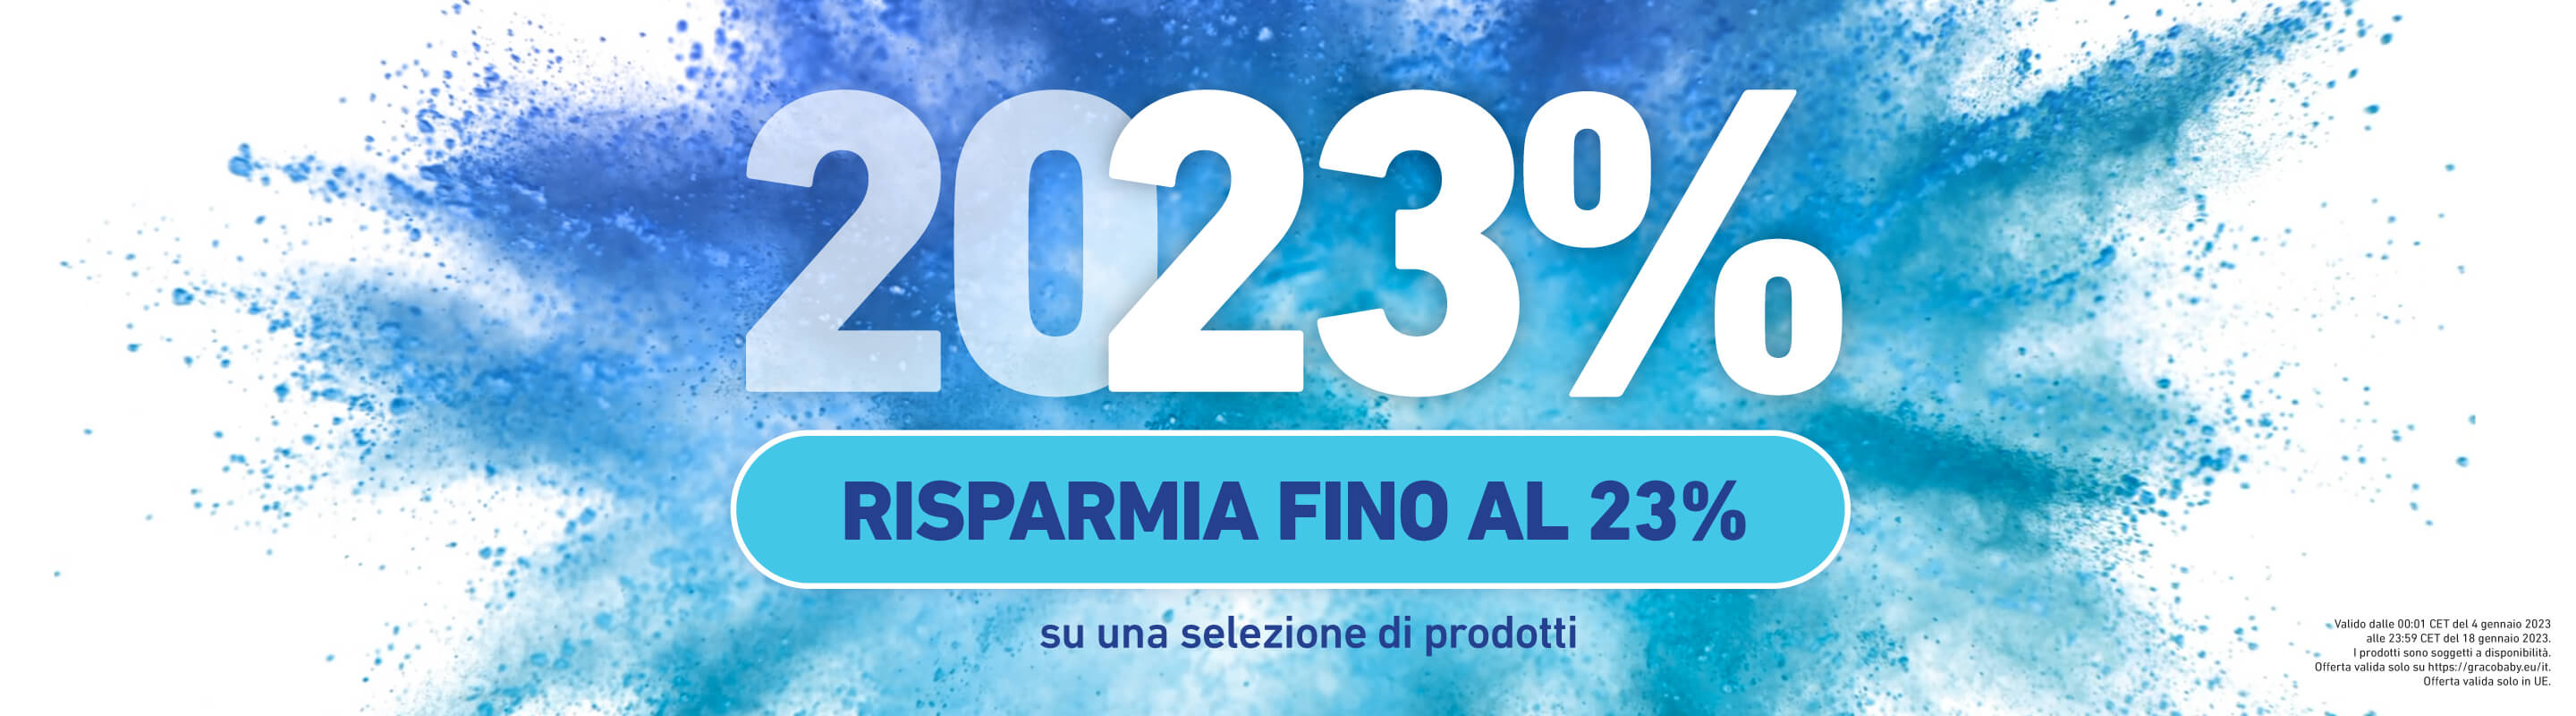 Immagine con polvere blu e testo che annuncia il risparmio fino al 23%.